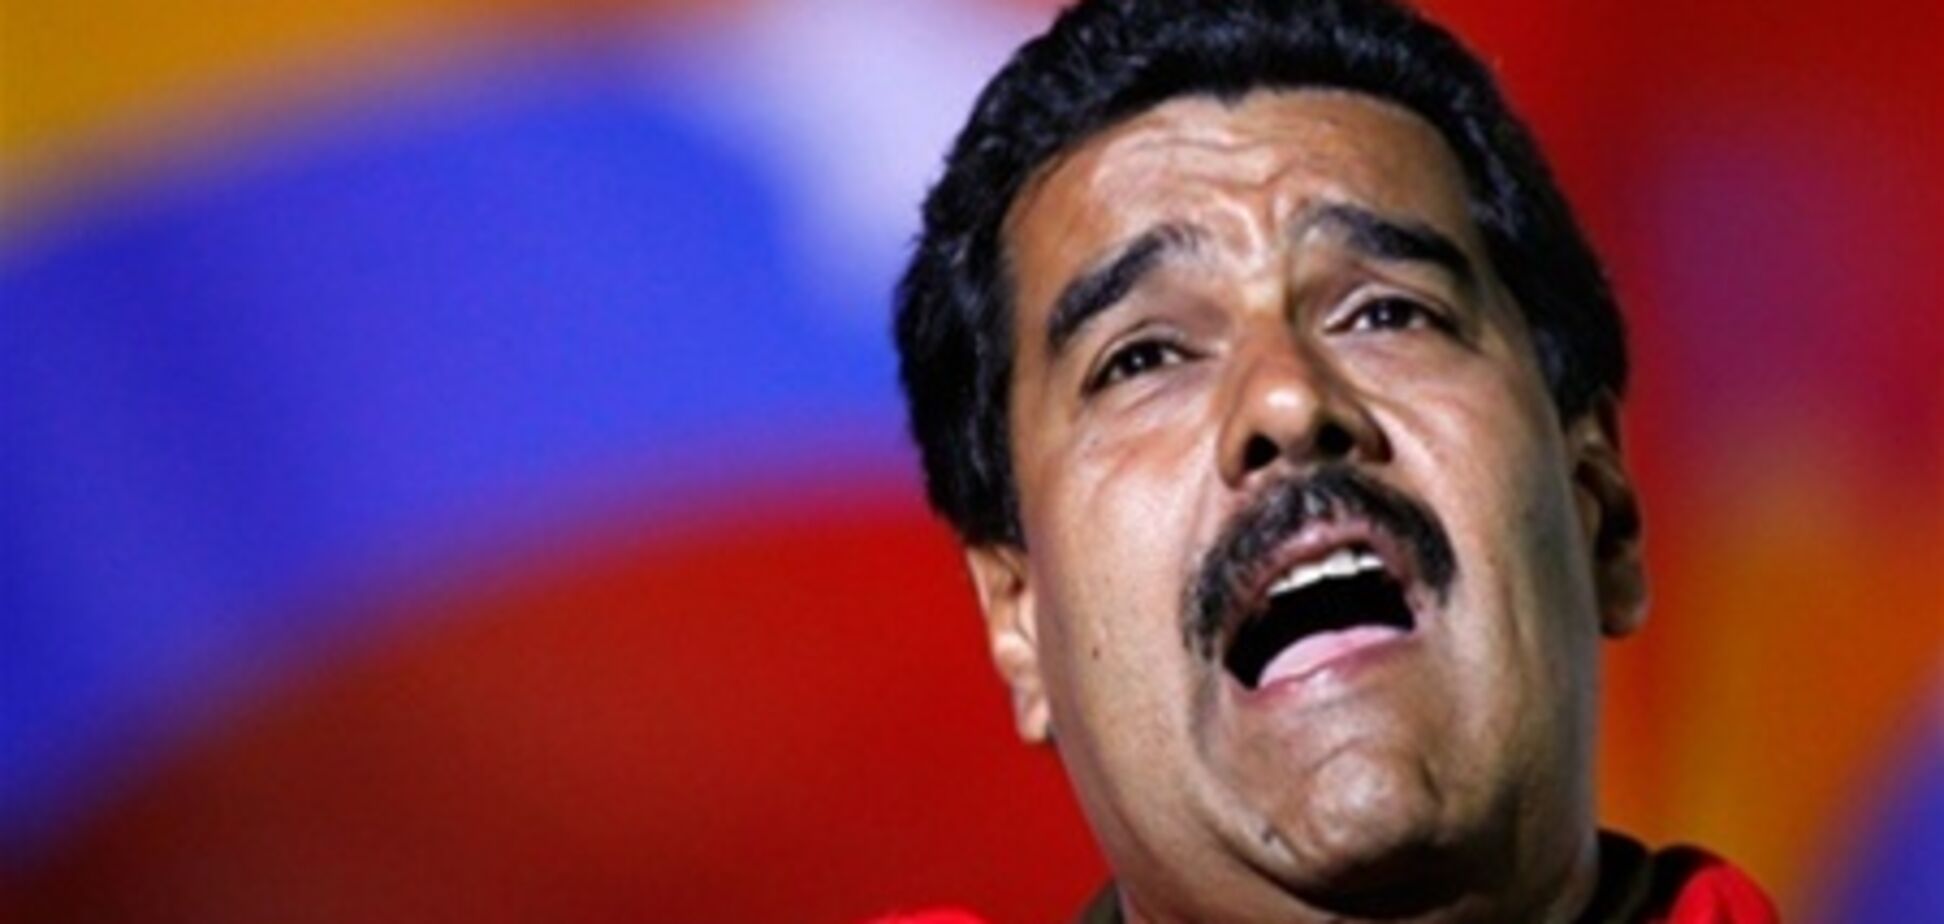 Мадуро пригрозив древнім прокляттям проголосував проти нього